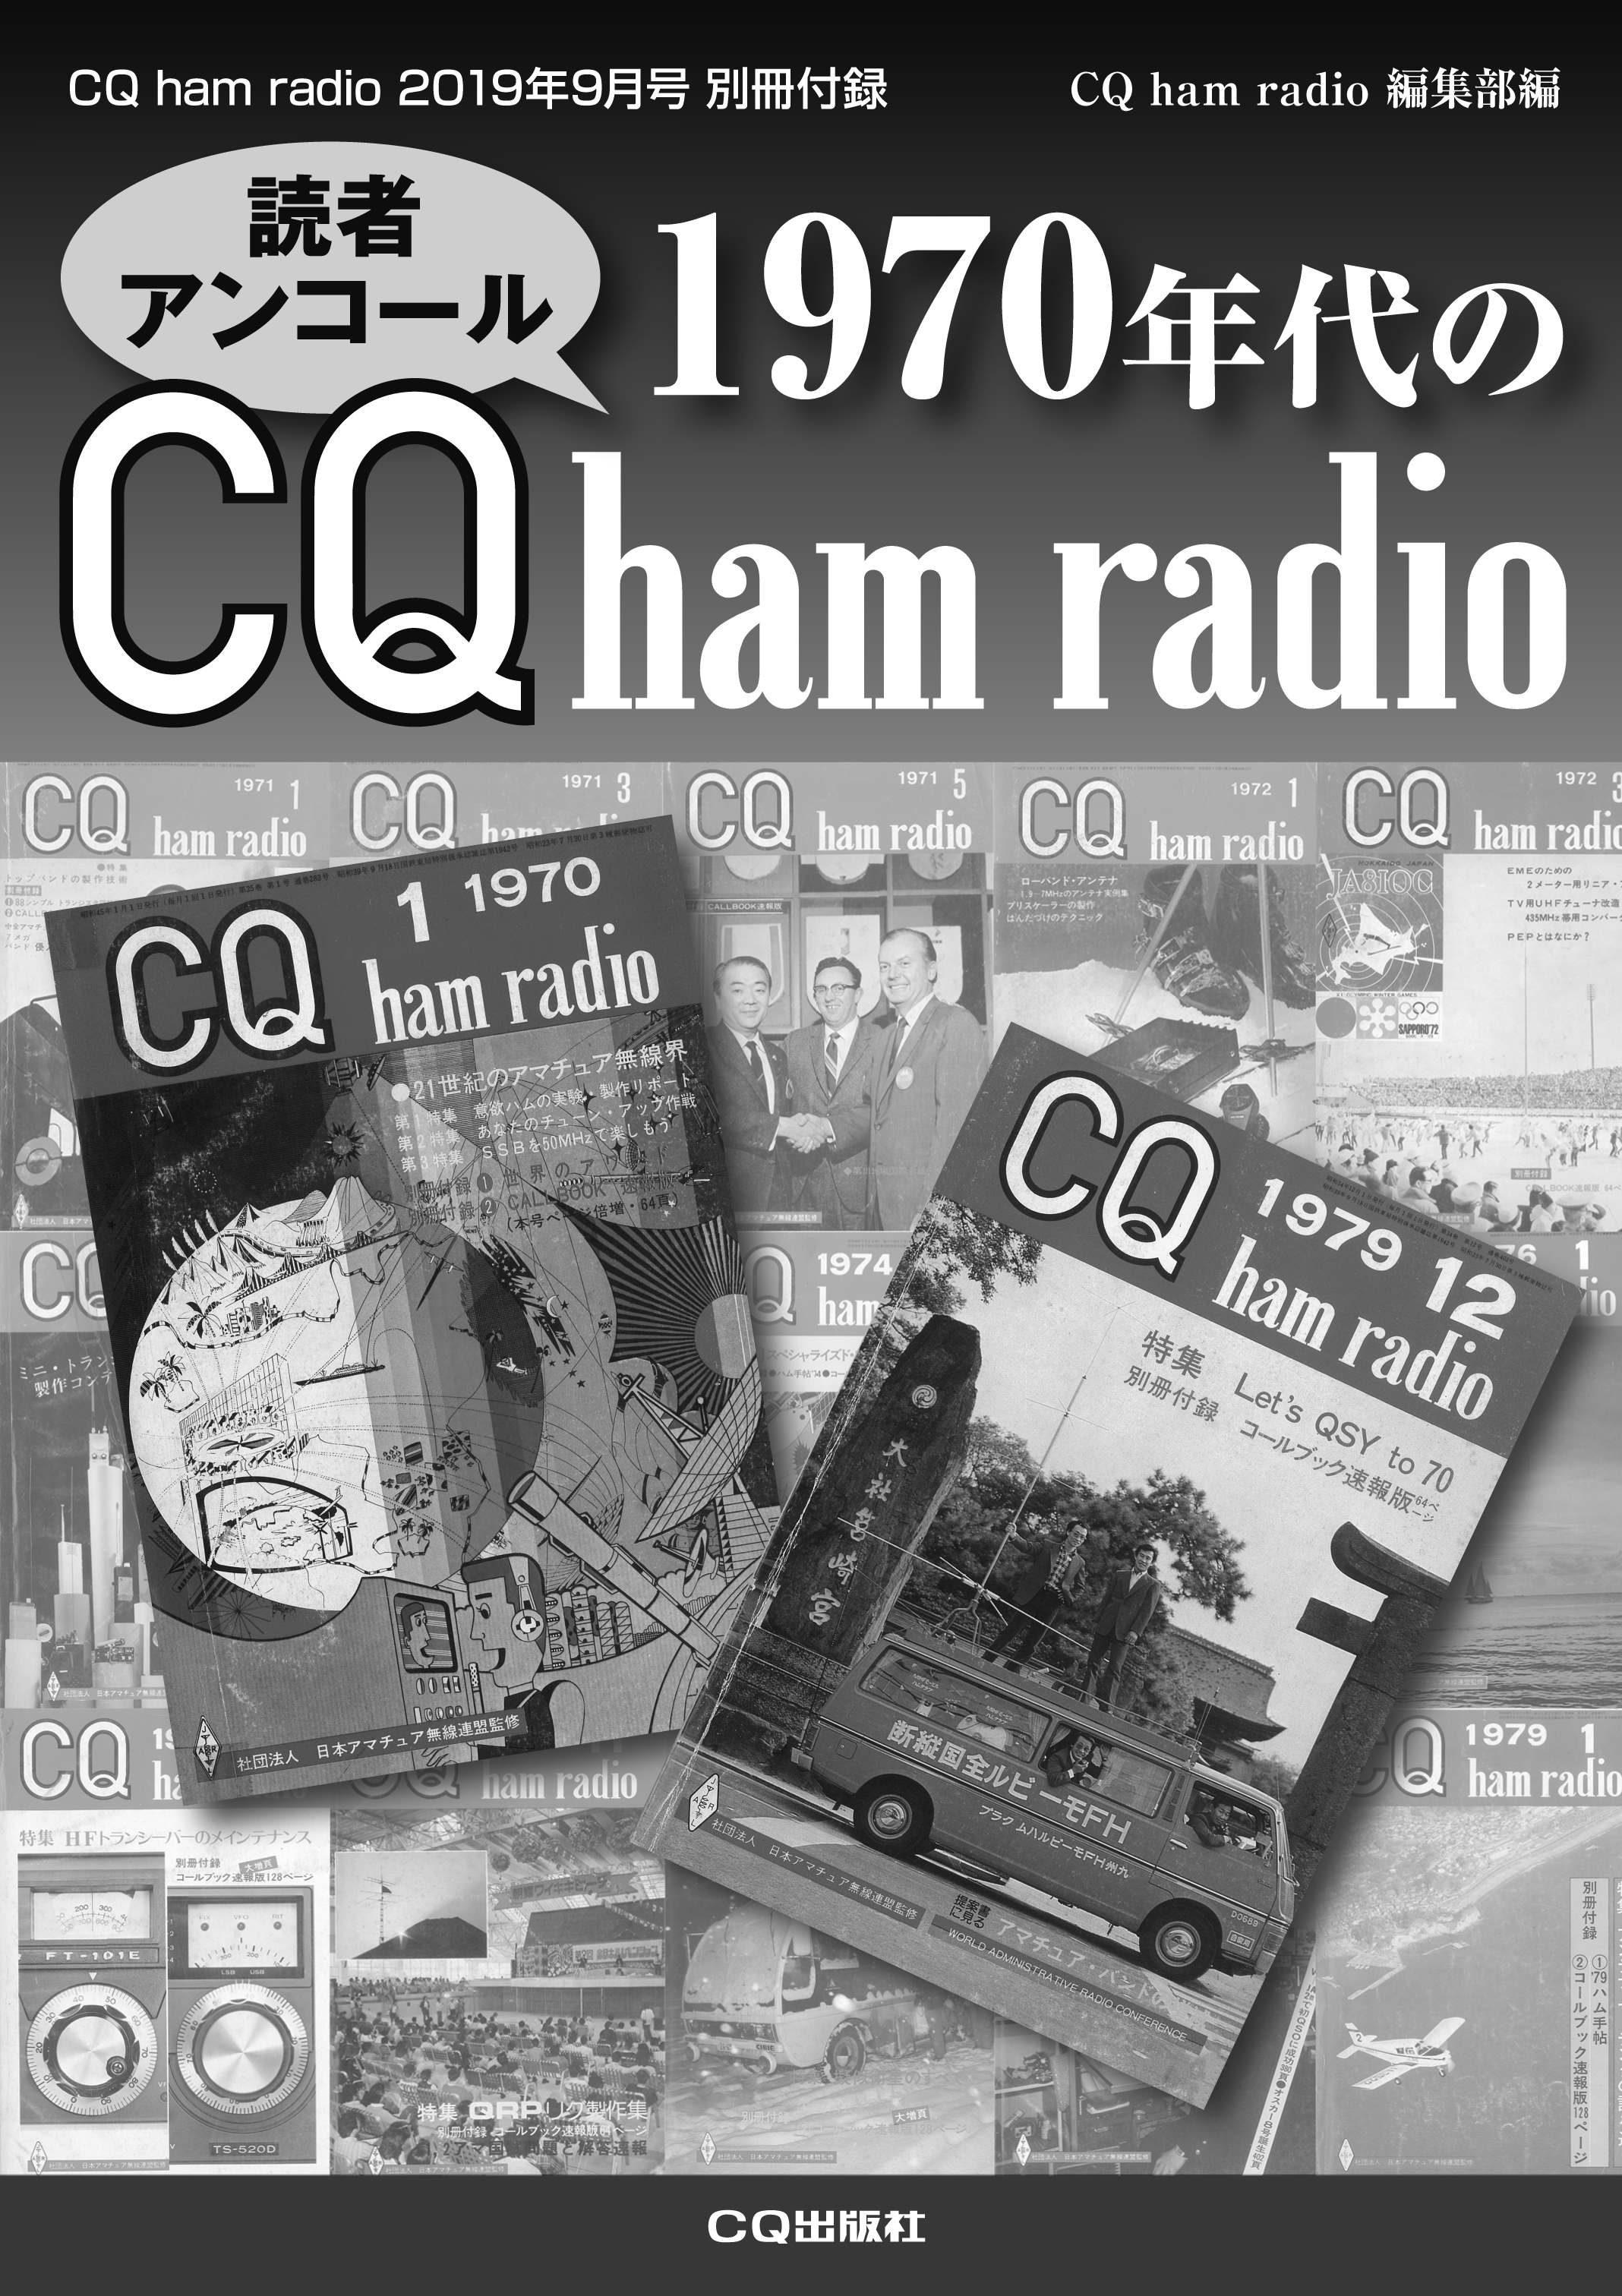 9月号別冊付録「1970年代のCQ ham radio」への投稿＆リクエスト募集!! | CQ ham radio WEB MAGAZINE  アマチュア無線の専門誌 | CQ出版